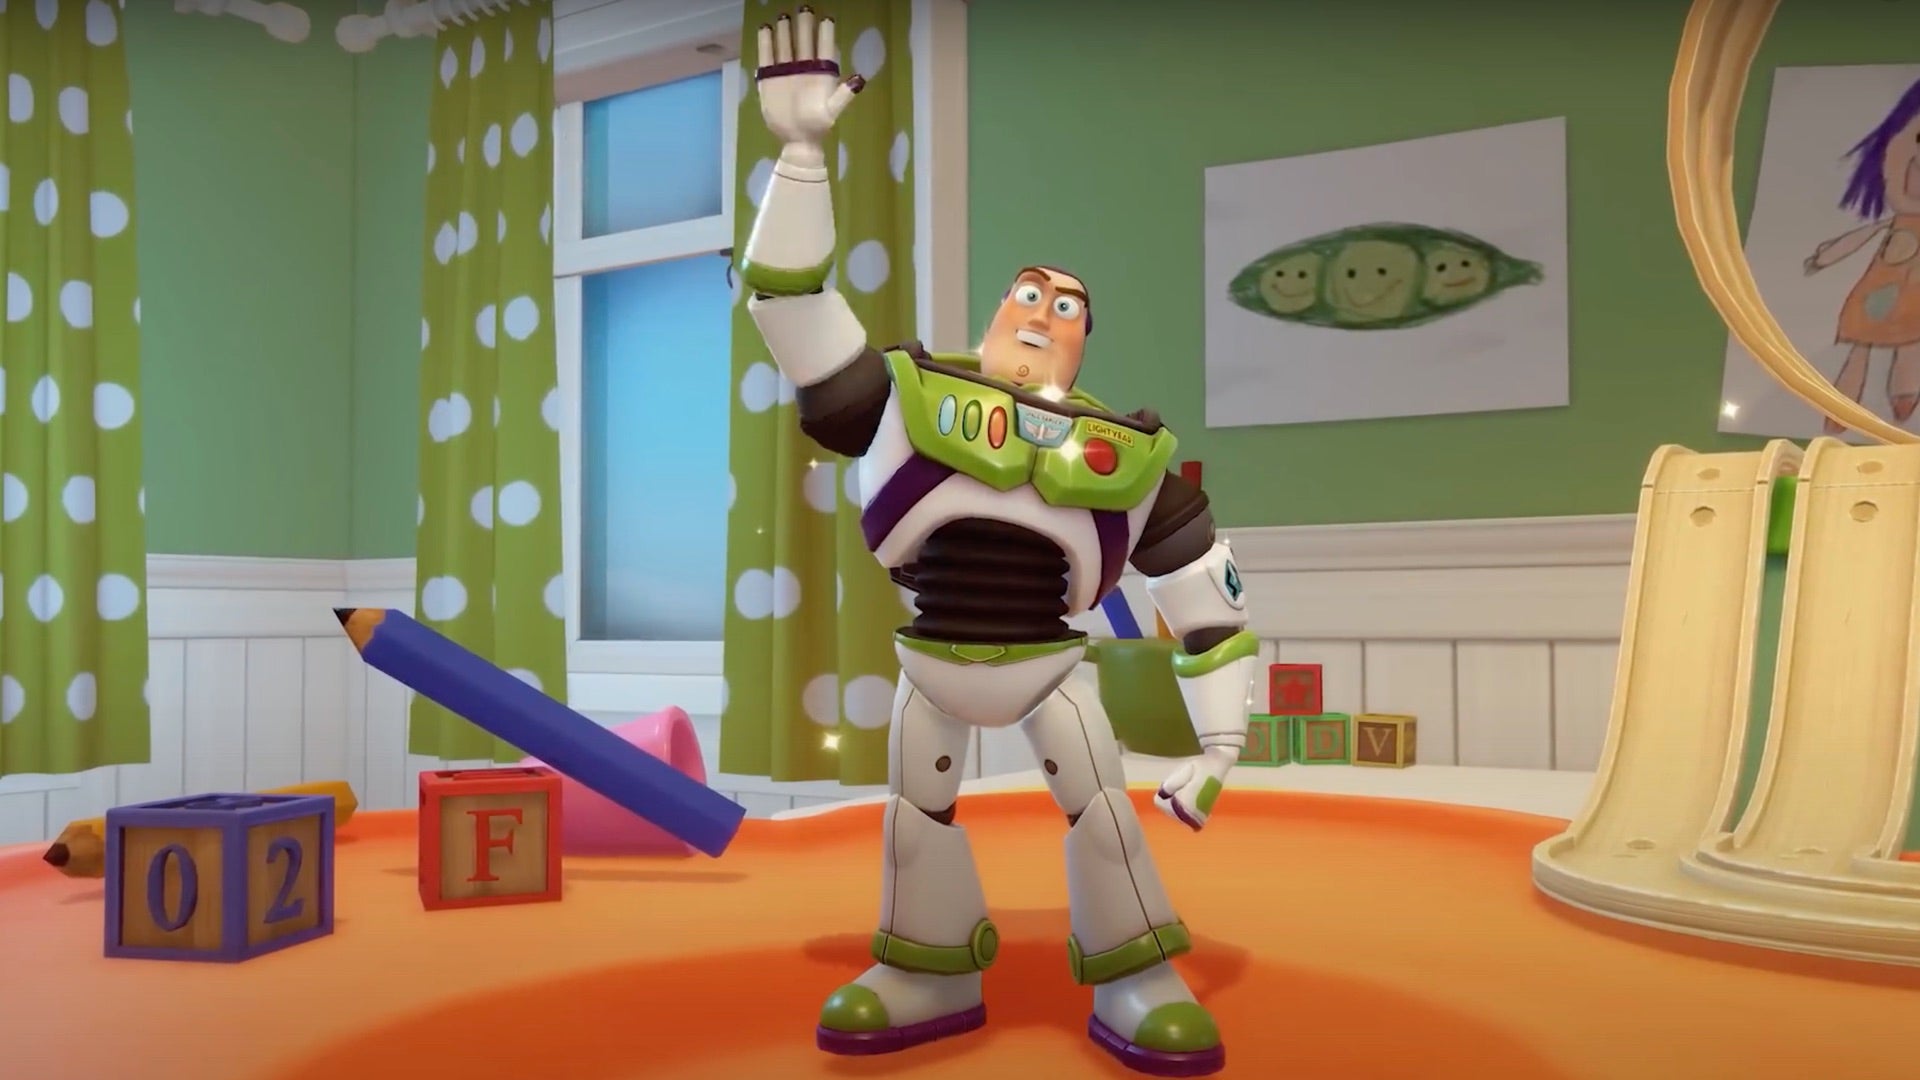 Afbeeldingen van Toy Story komt in december naar Disney Dreamlight Valley